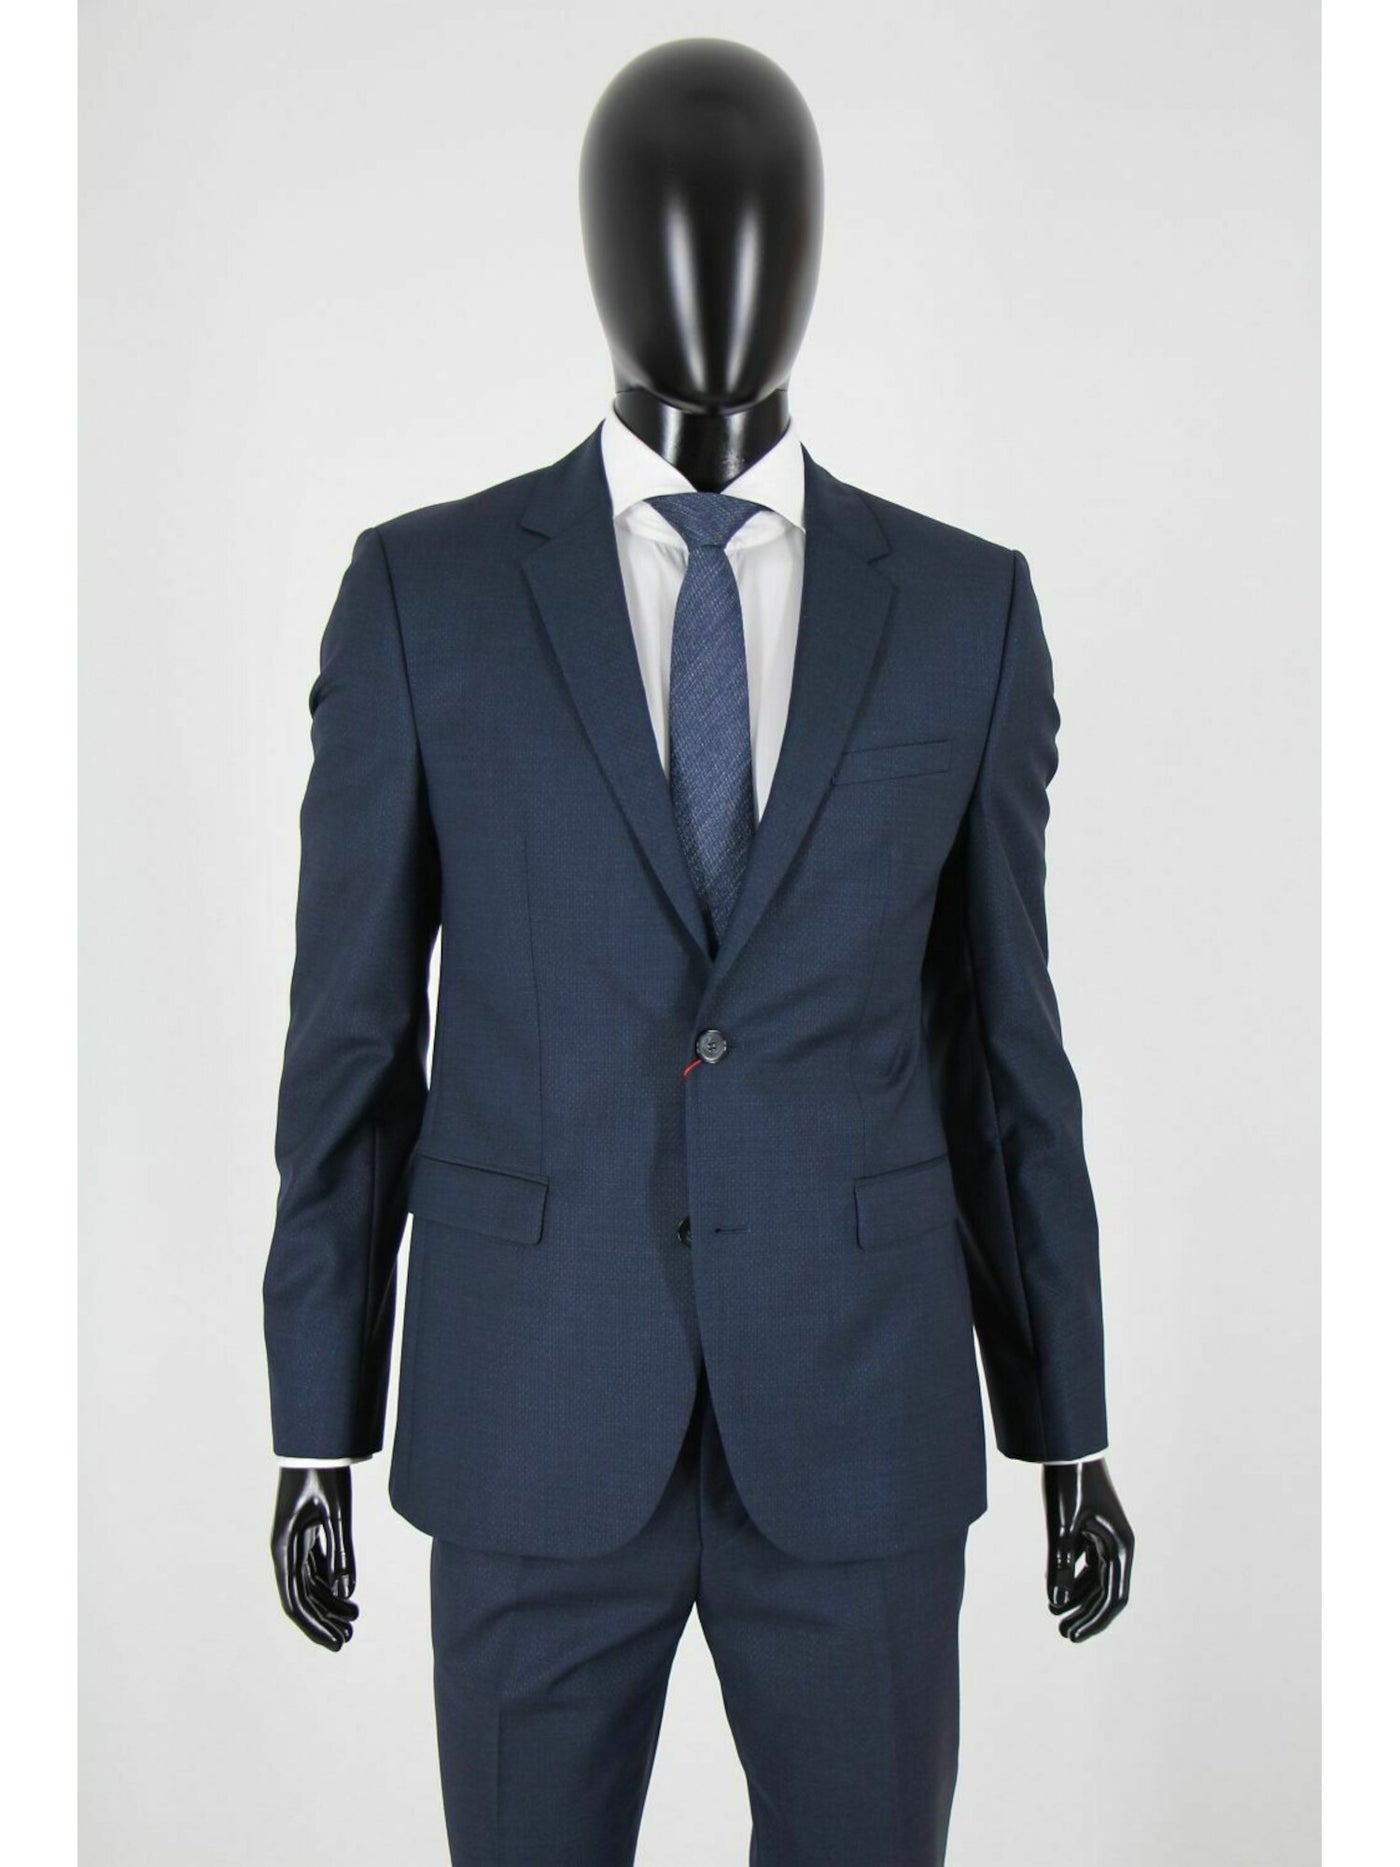 HUGO BOSS Mens Navy Single Breasted, Extra Slim Fit Wool Blend Suit Separate Blazer Jacket 46R